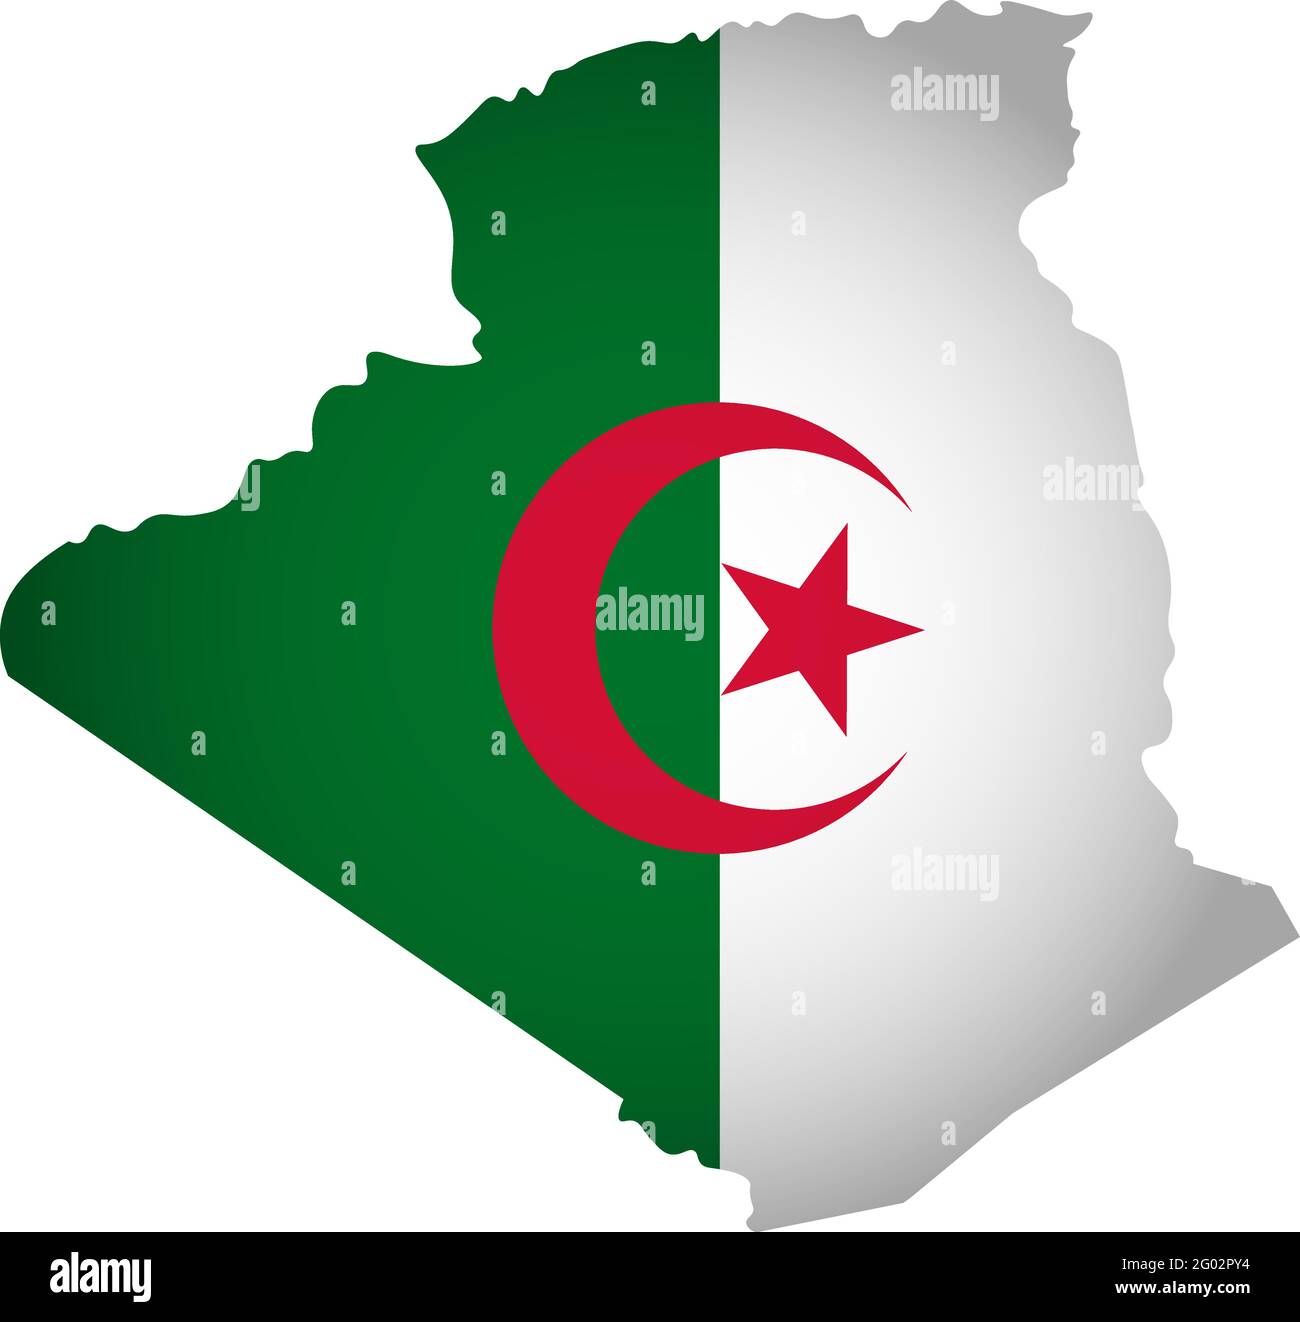 Ilustración con bandera nacional argelina con forma simplificada del mapa de Argelia (jpg). Sombra de volumen en el mapa Ilustración del Vector